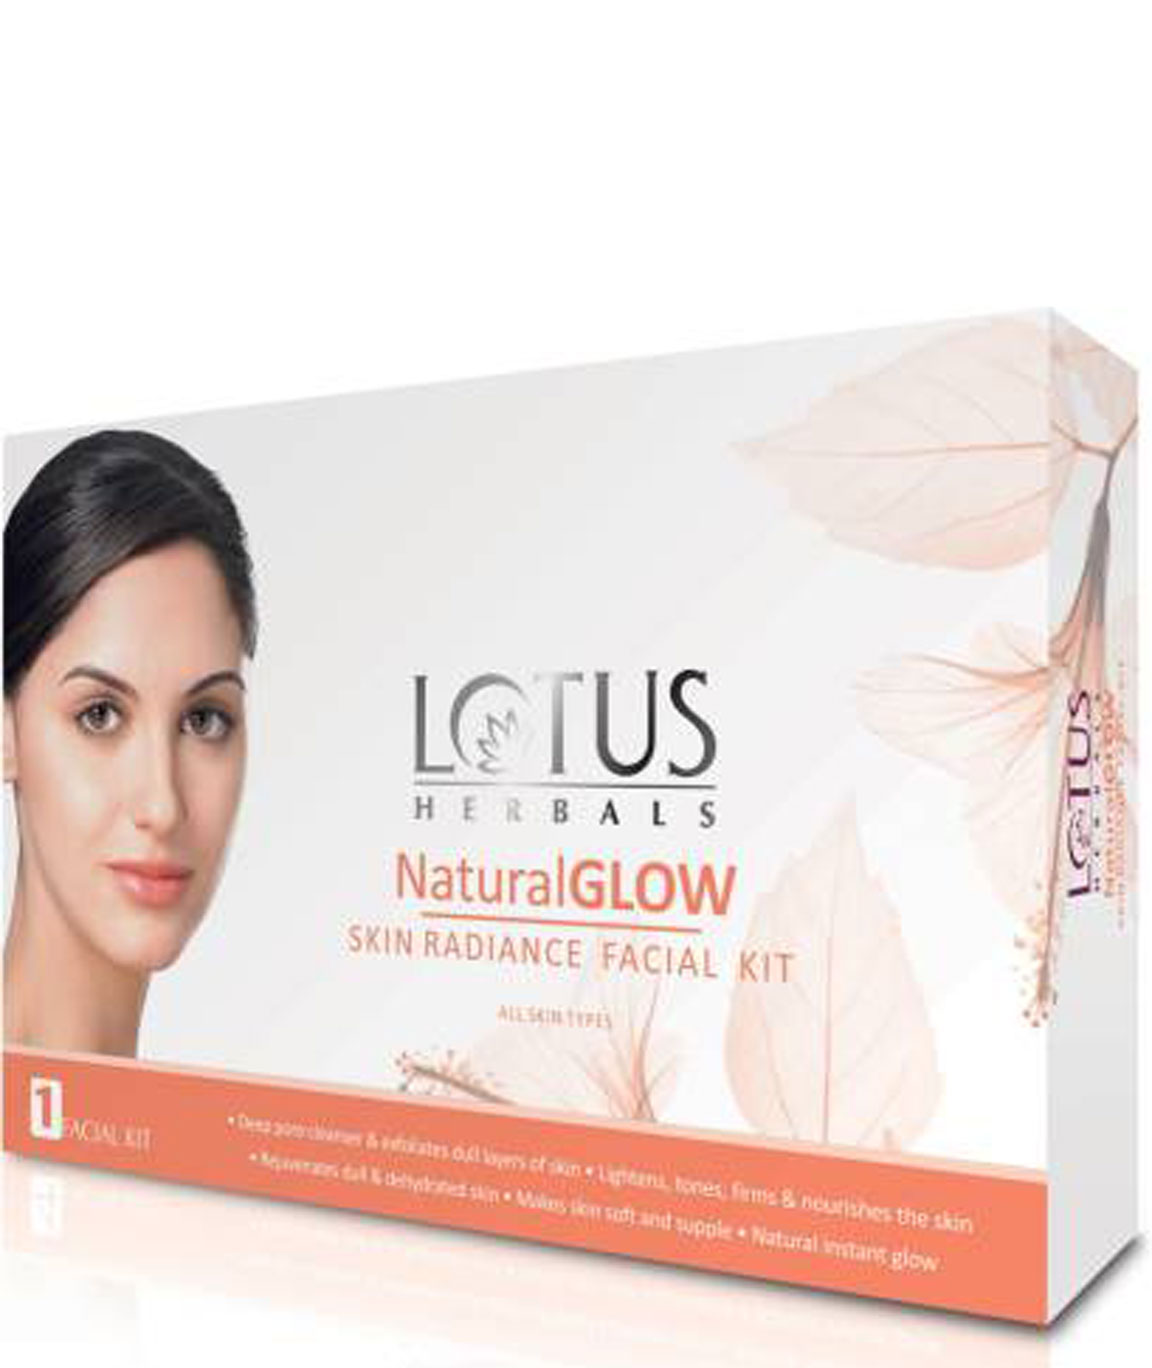 Lotus Herbals Natural Glow Kit Skin Radiance 1 Facial Kit 170gm